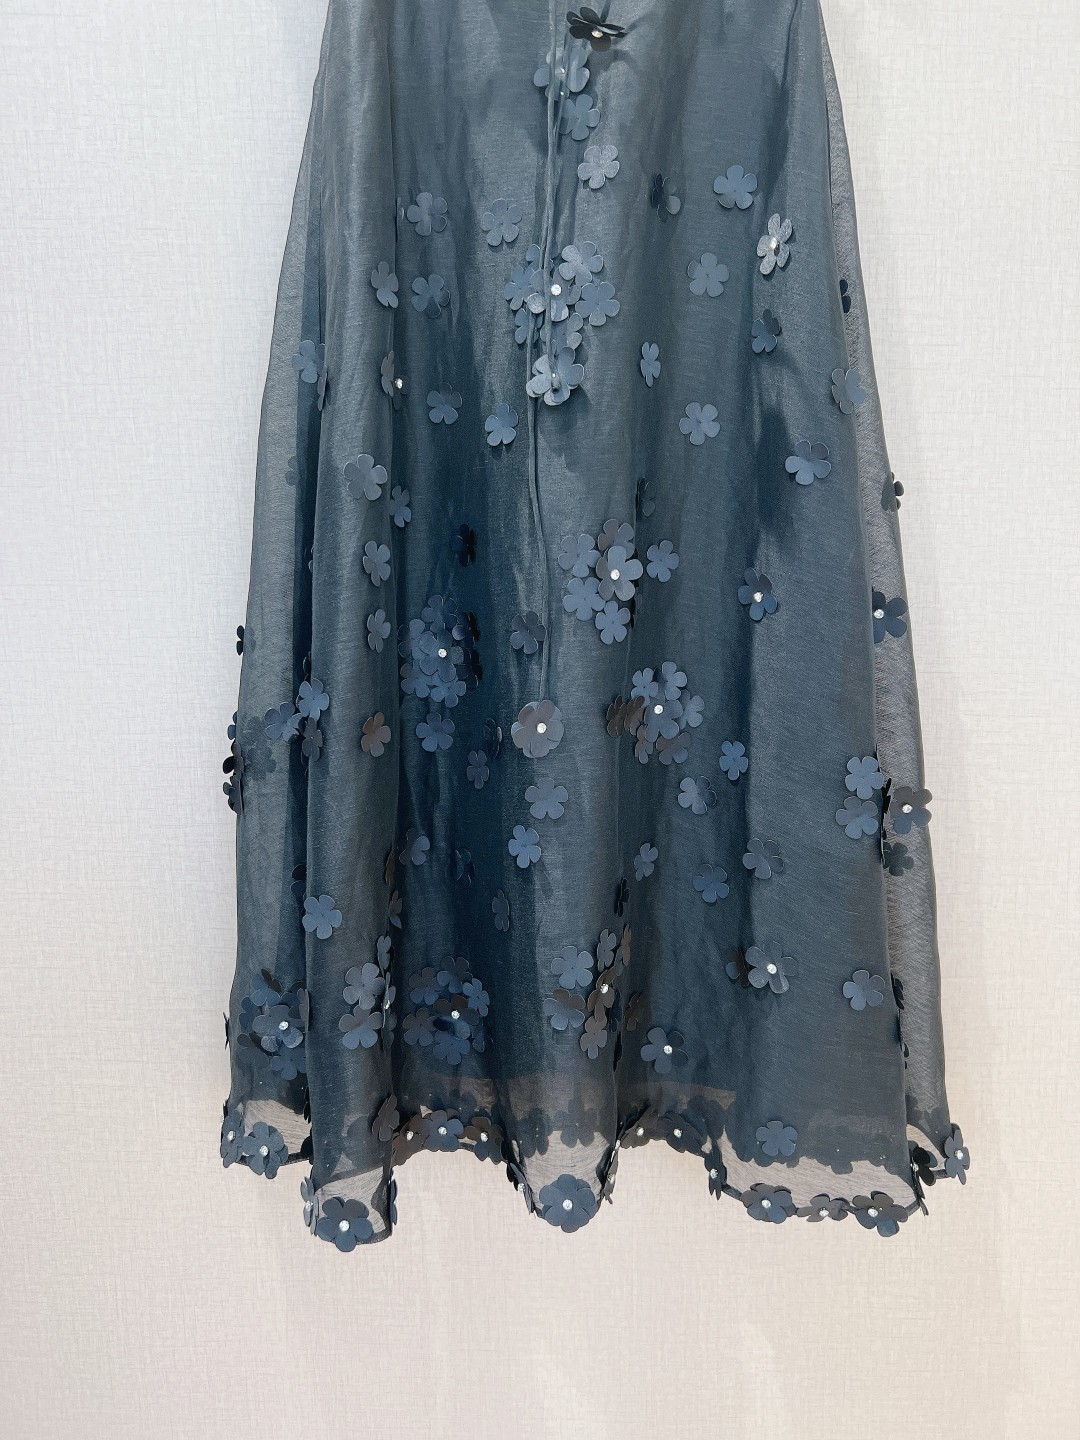 澳洲设计师品牌Zimmerman*n新品丝麻料质地材质饰有精致3D花朵贴花网纱半身裙的裙身上饰有钻石立体